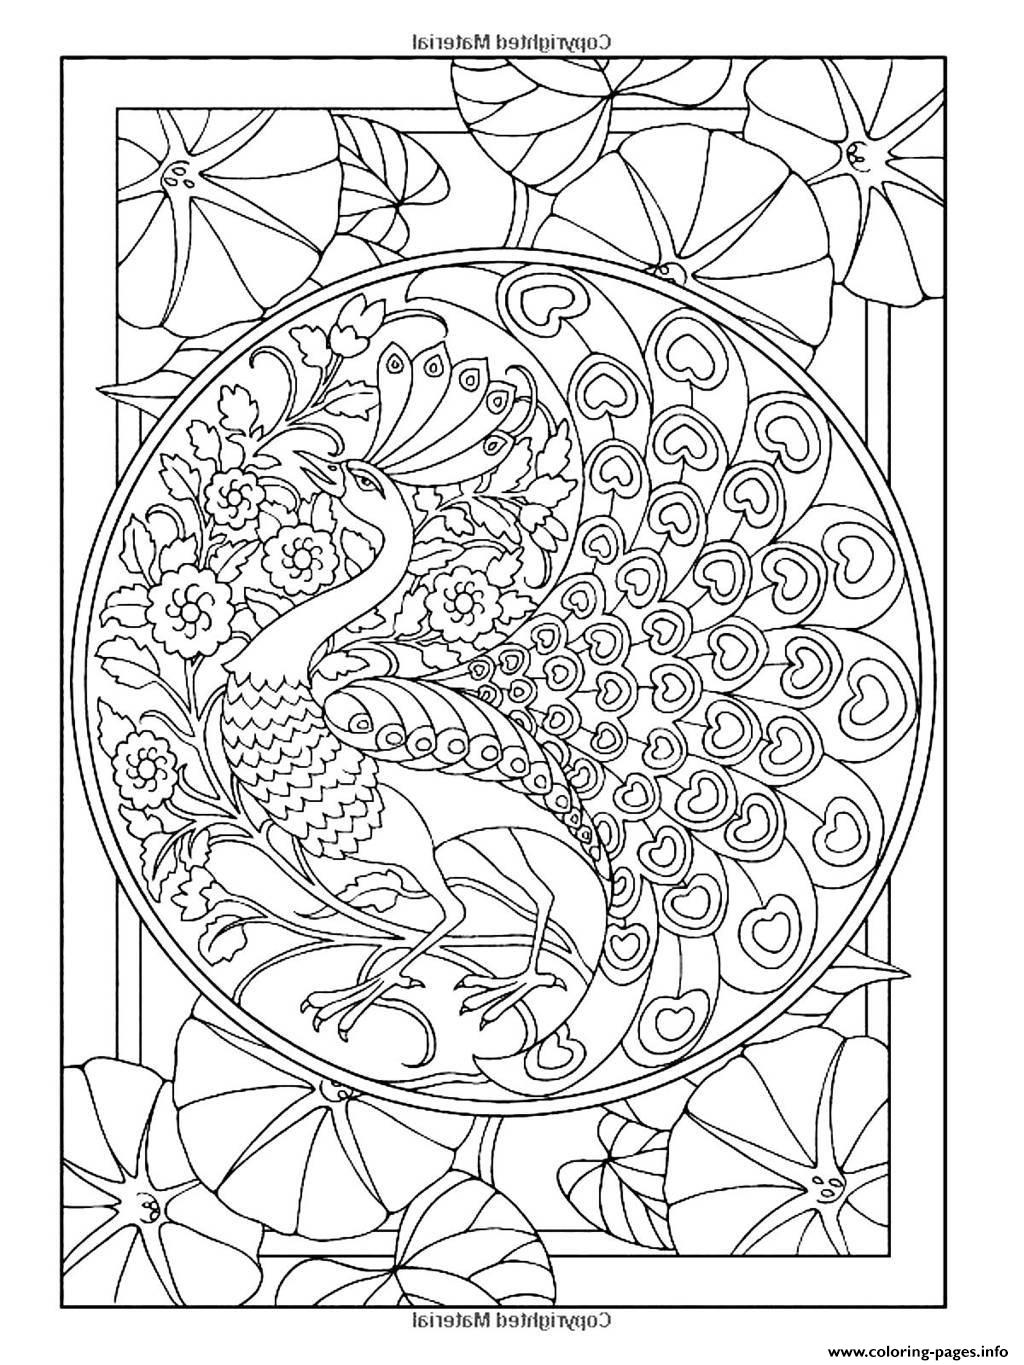 Adult Art Nouveau Style Peacock coloring